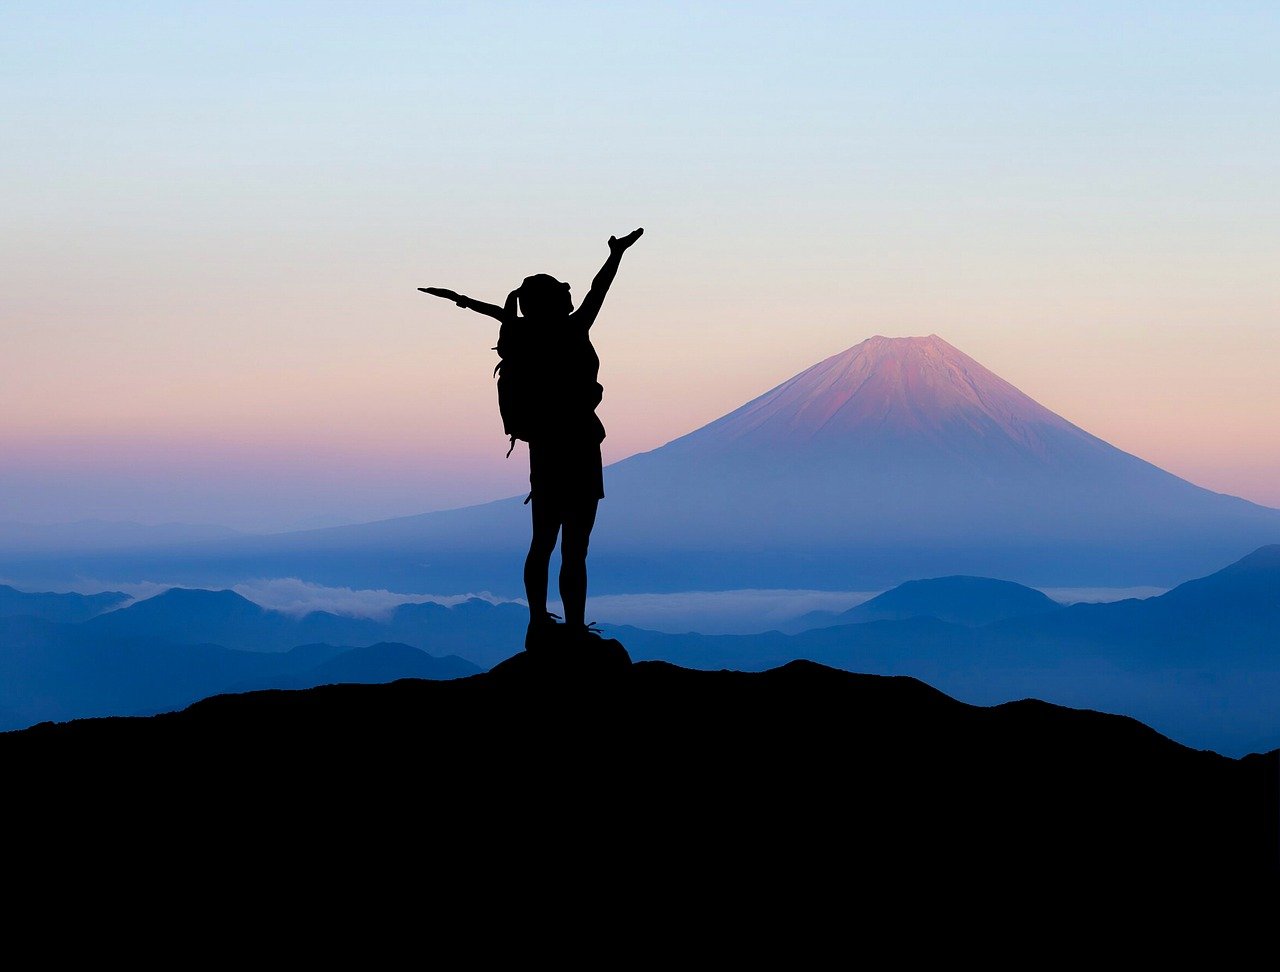 散歩のついでに富士山に登った人はいない